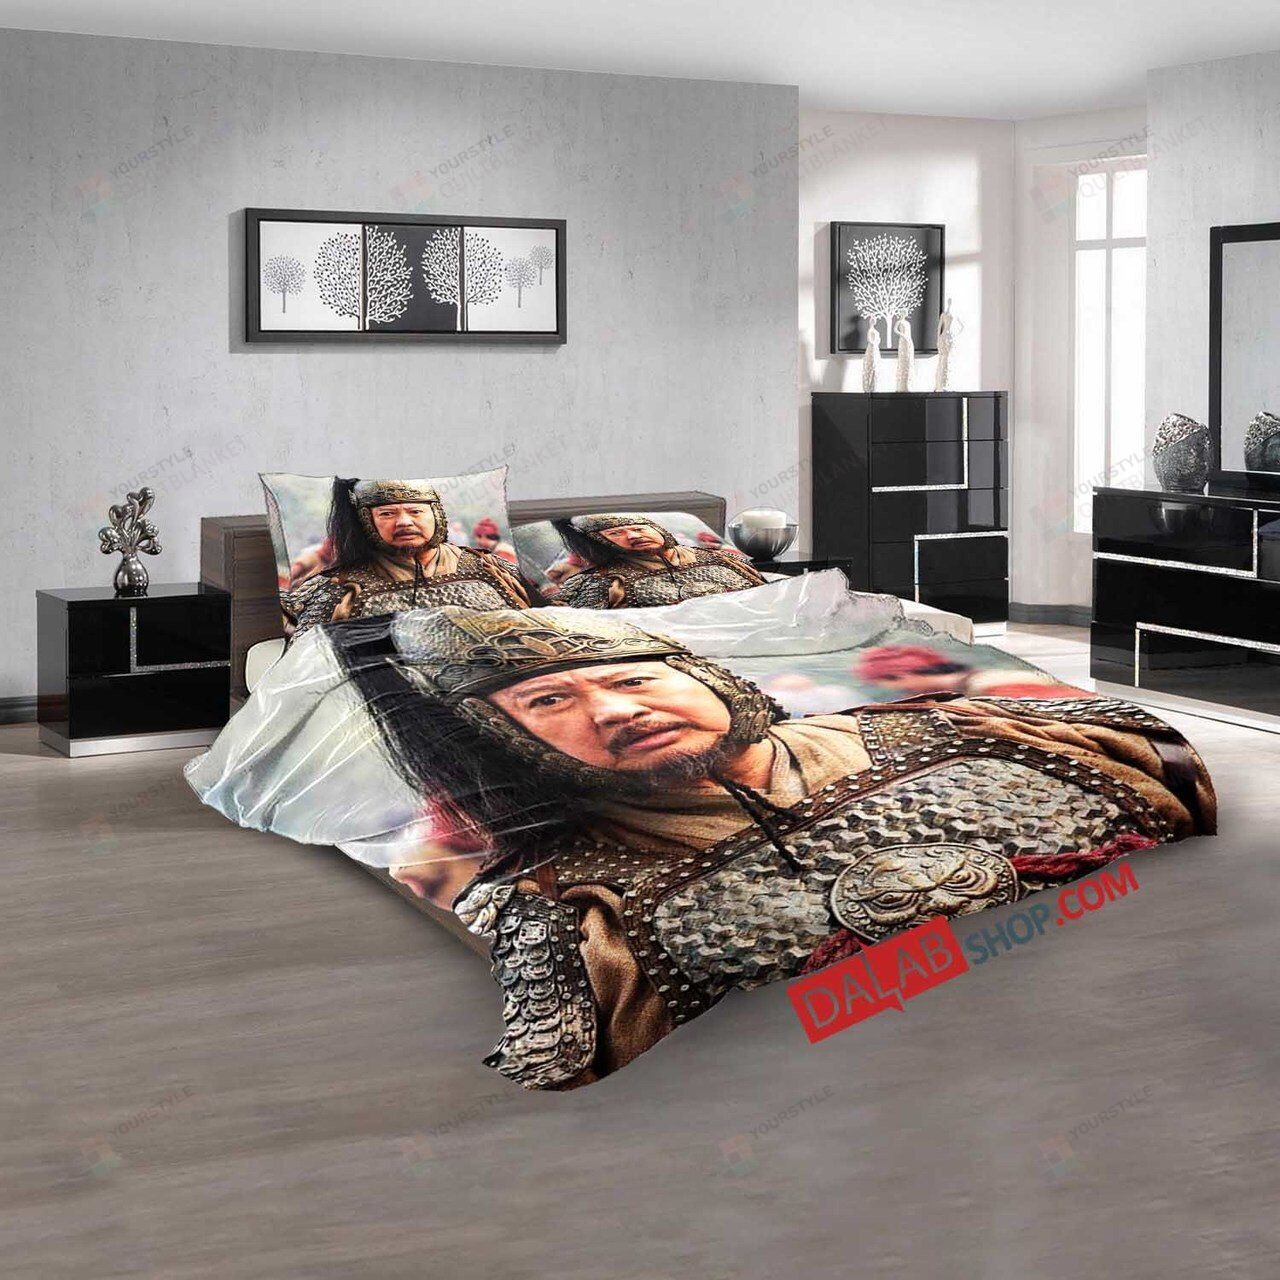 Movie God Of War V 3d Customized Duvet Cover Bedroom Sets Bedding Sets